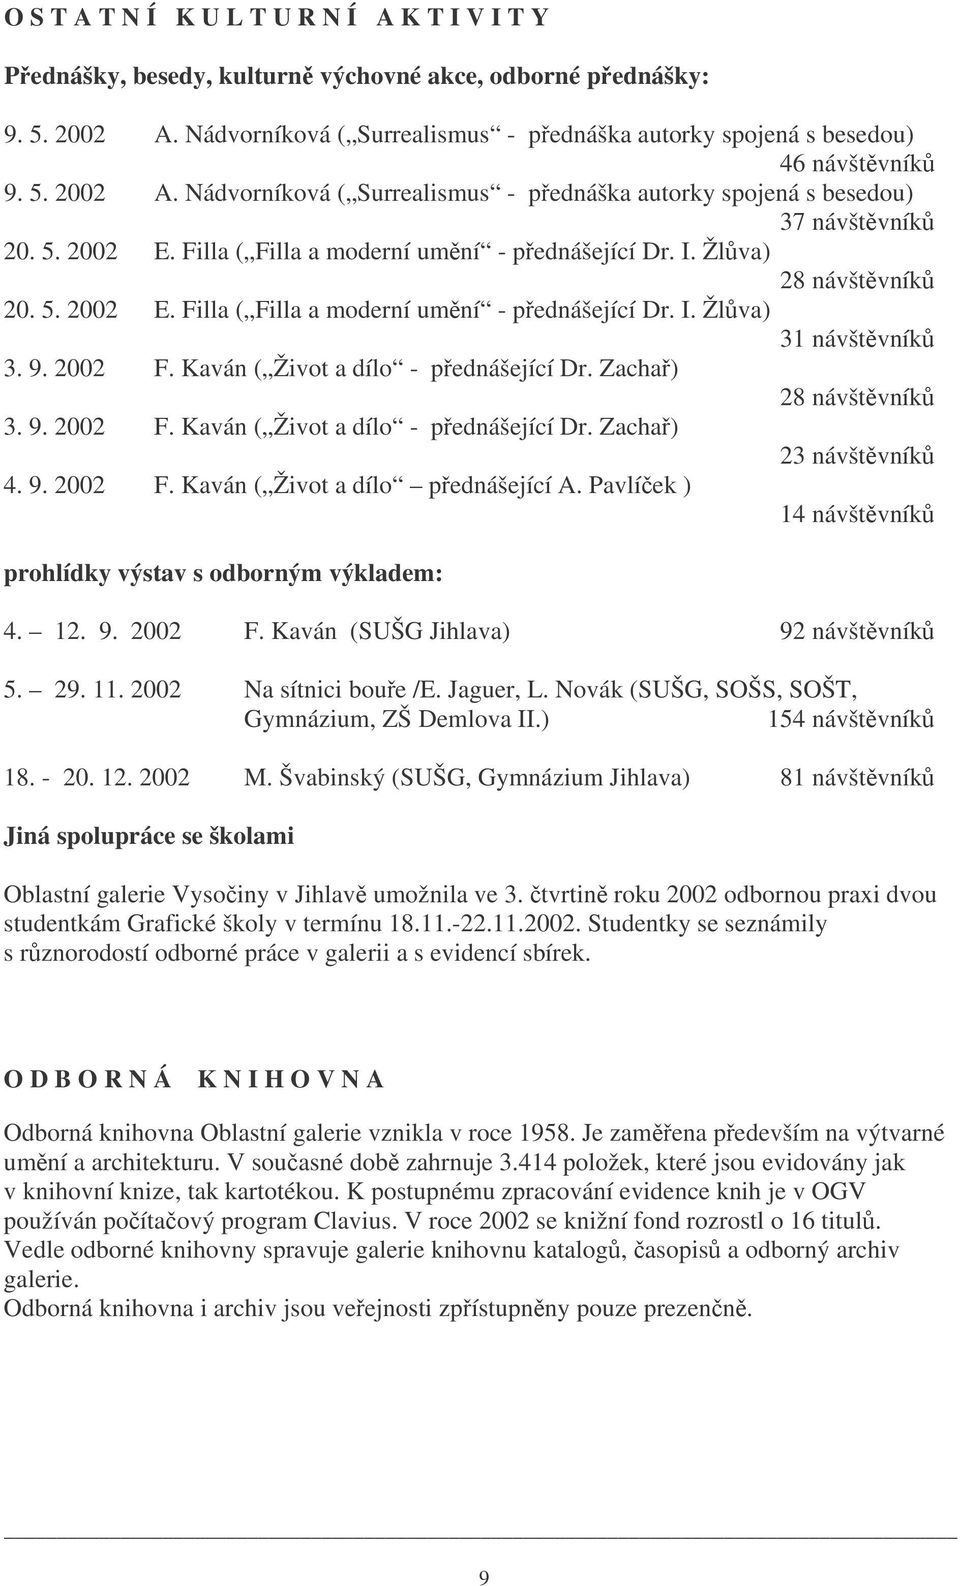 9. 2002 F. Kaván ( Život a dílo - pednášející Dr. Zacha) 28 návštvník 3. 9. 2002 F. Kaván ( Život a dílo - pednášející Dr. Zacha) 23 návštvník 4. 9. 2002 F. Kaván ( Život a dílo pednášející A.